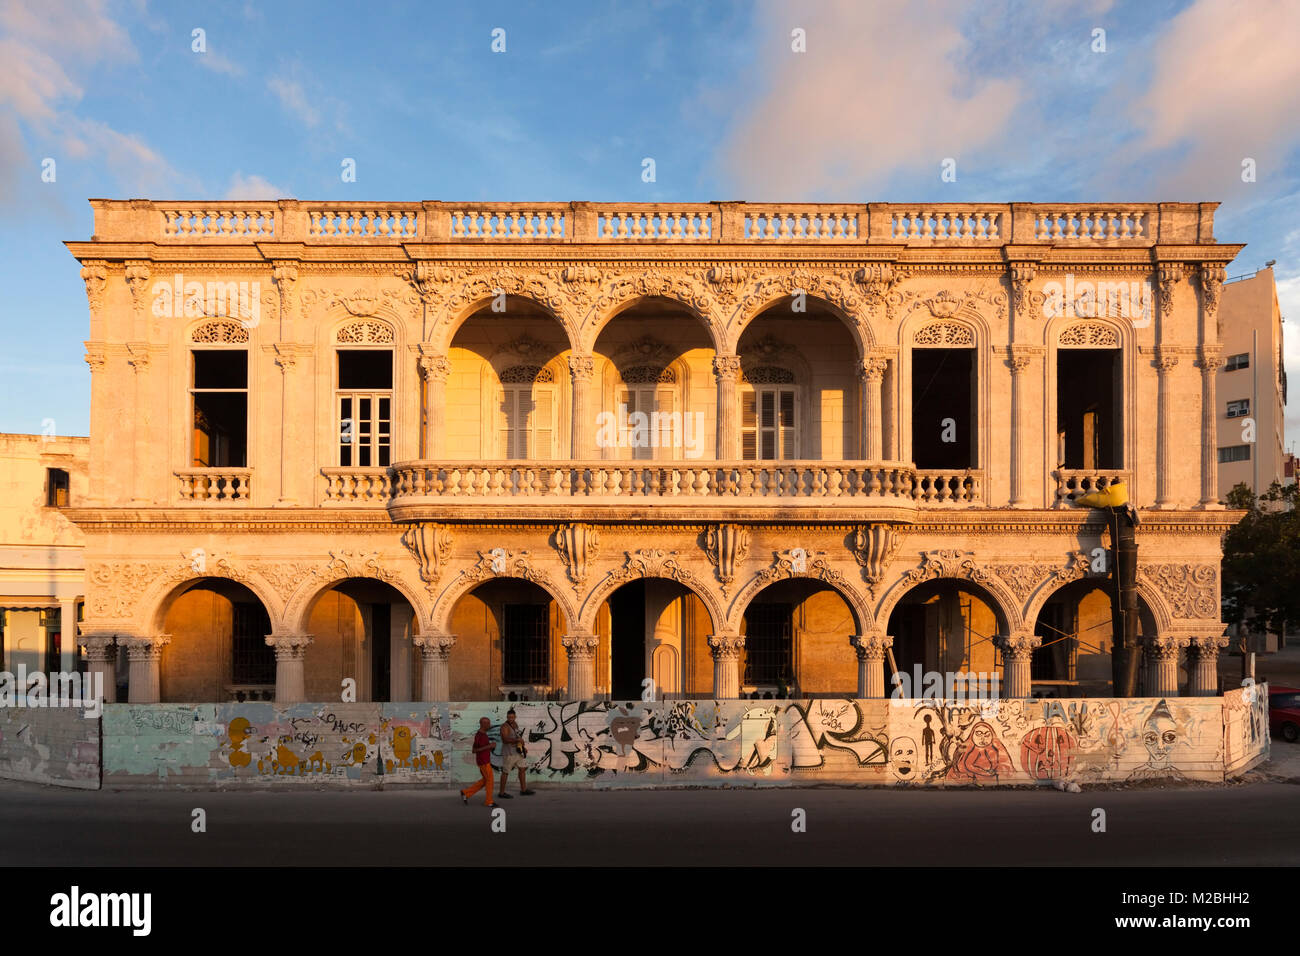 Si tratta di un vecchio edificio in fase di ristrutturazione a l'Avana Vecchia Cuba. Foto Stock